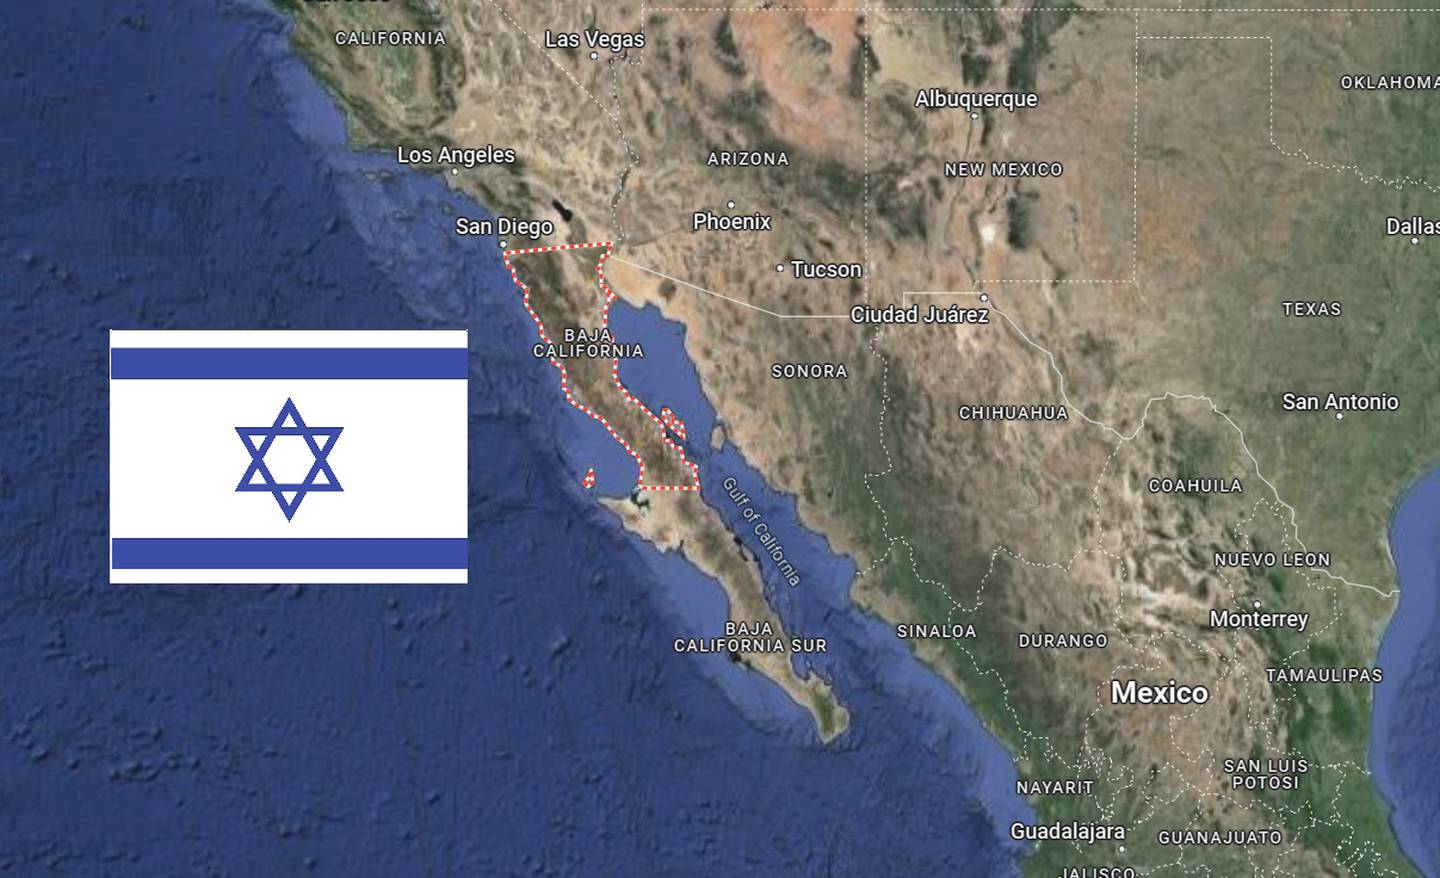 Uno de estos esfuerzos incluyó una sugerencia de la princesa Marie Bonaparte para que los Estados Unidos compraran Baja California a México y establecieran allí un estado judío.